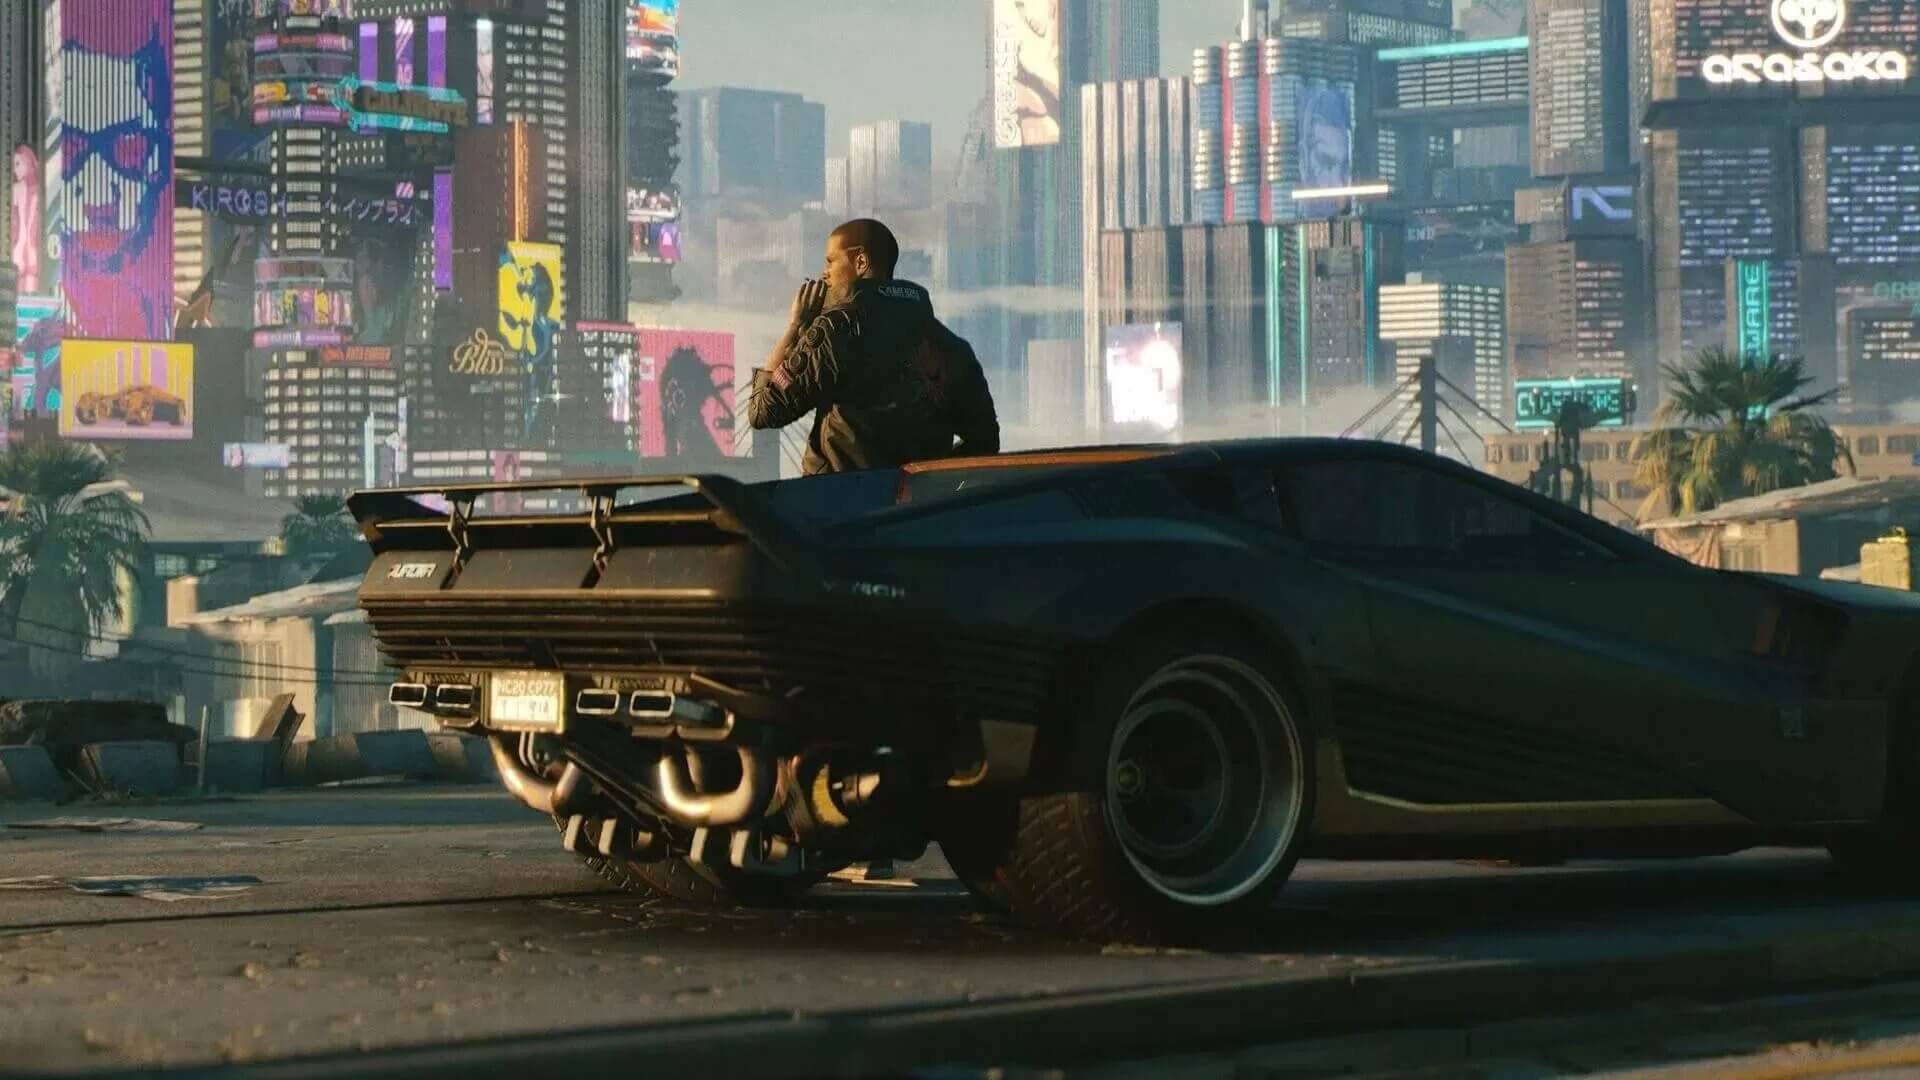 Karakter dalam game Cyberpunk 2077 sedang bersandar di luar mobil hitam